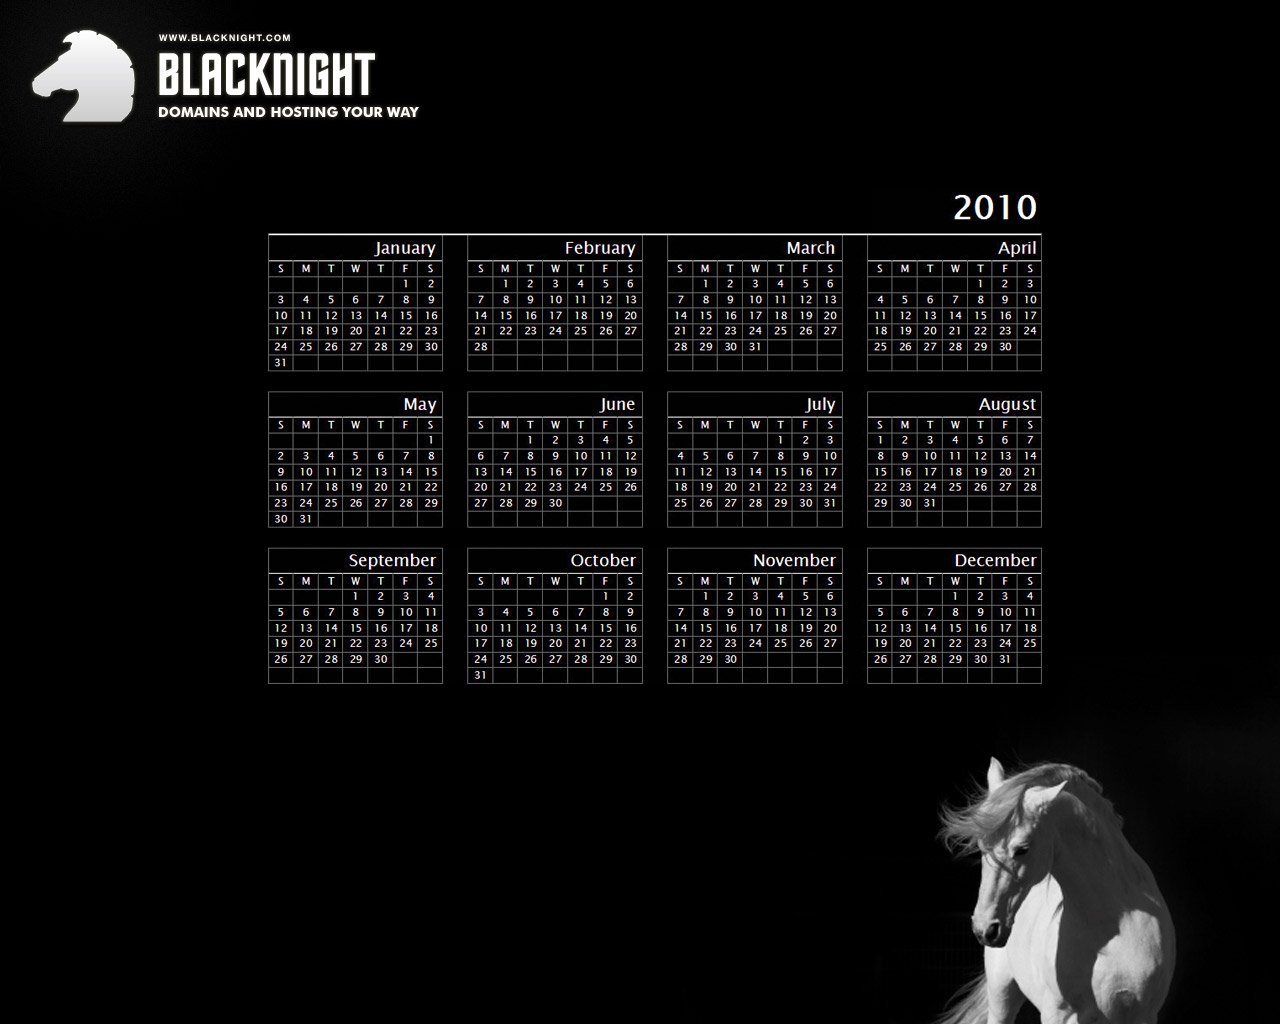 http://blog.blacknight.com/images/blacknight-desktop-wallpaper-1280x1024.jpg